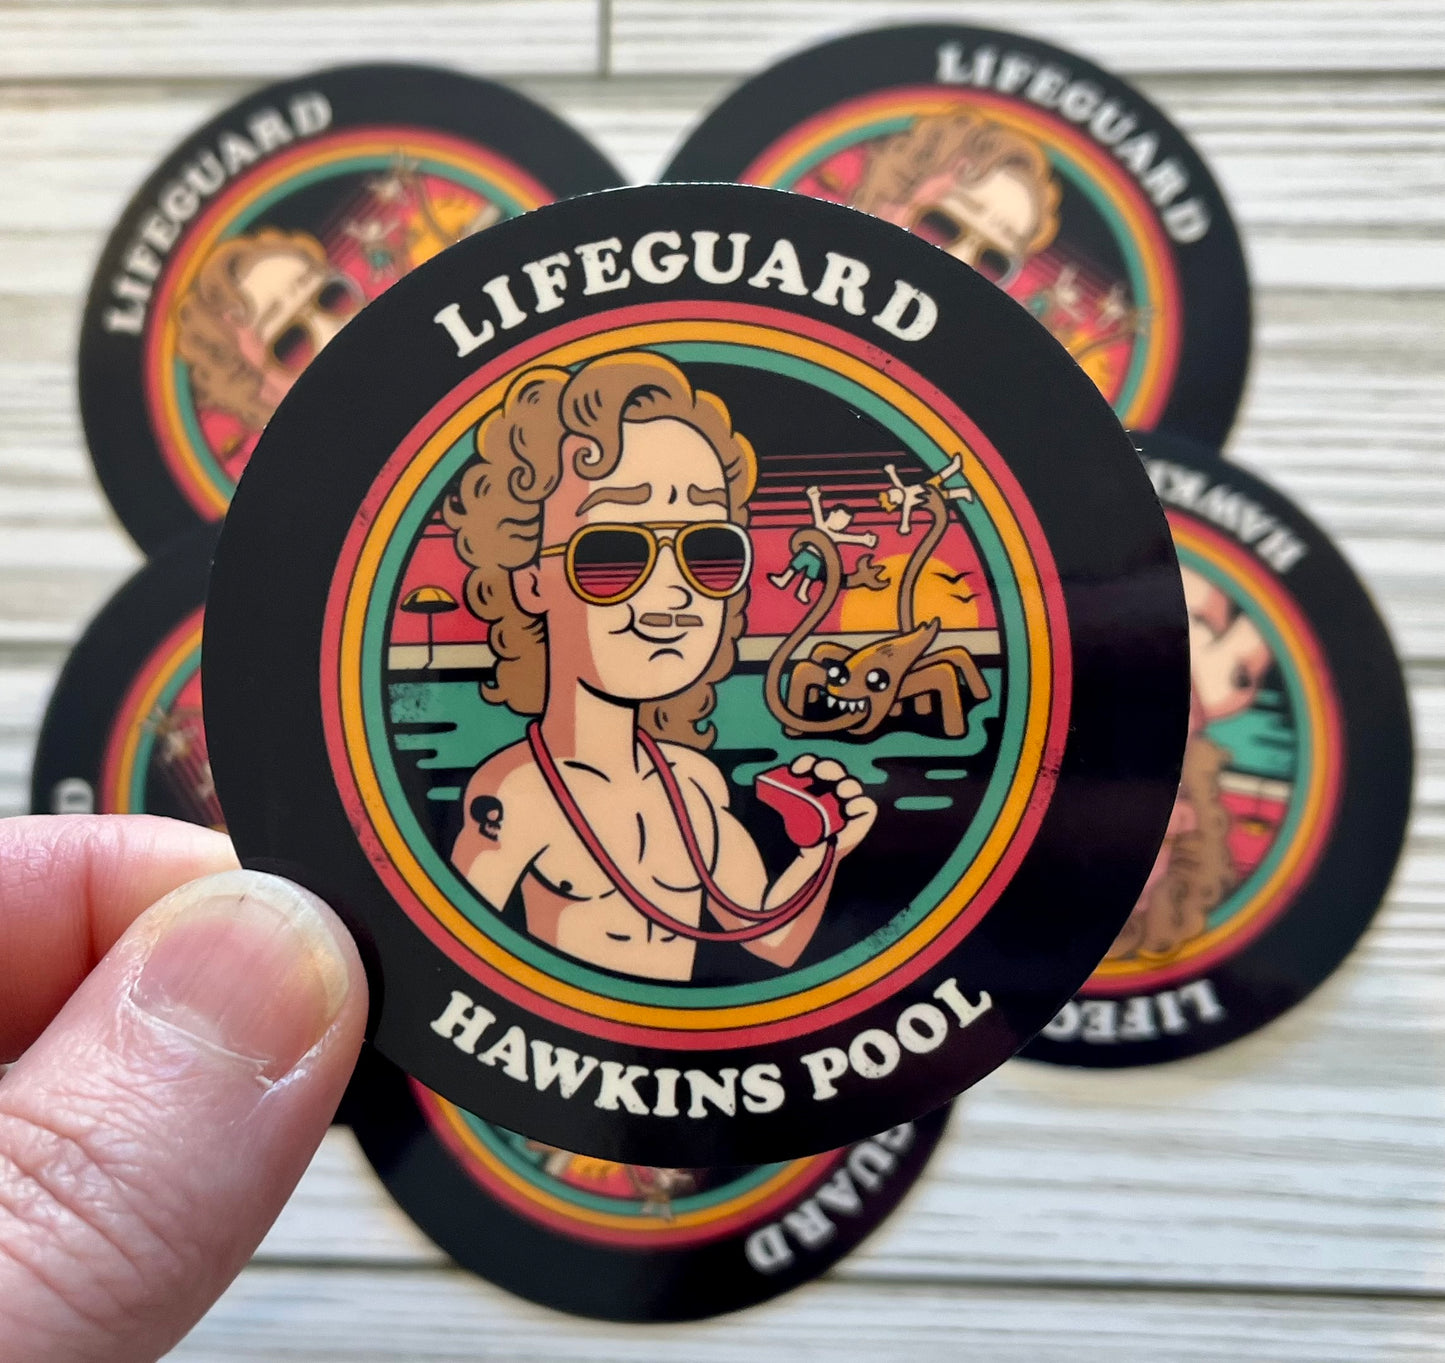 Hawkins Pool Lifeguard, Vinyl Sticker